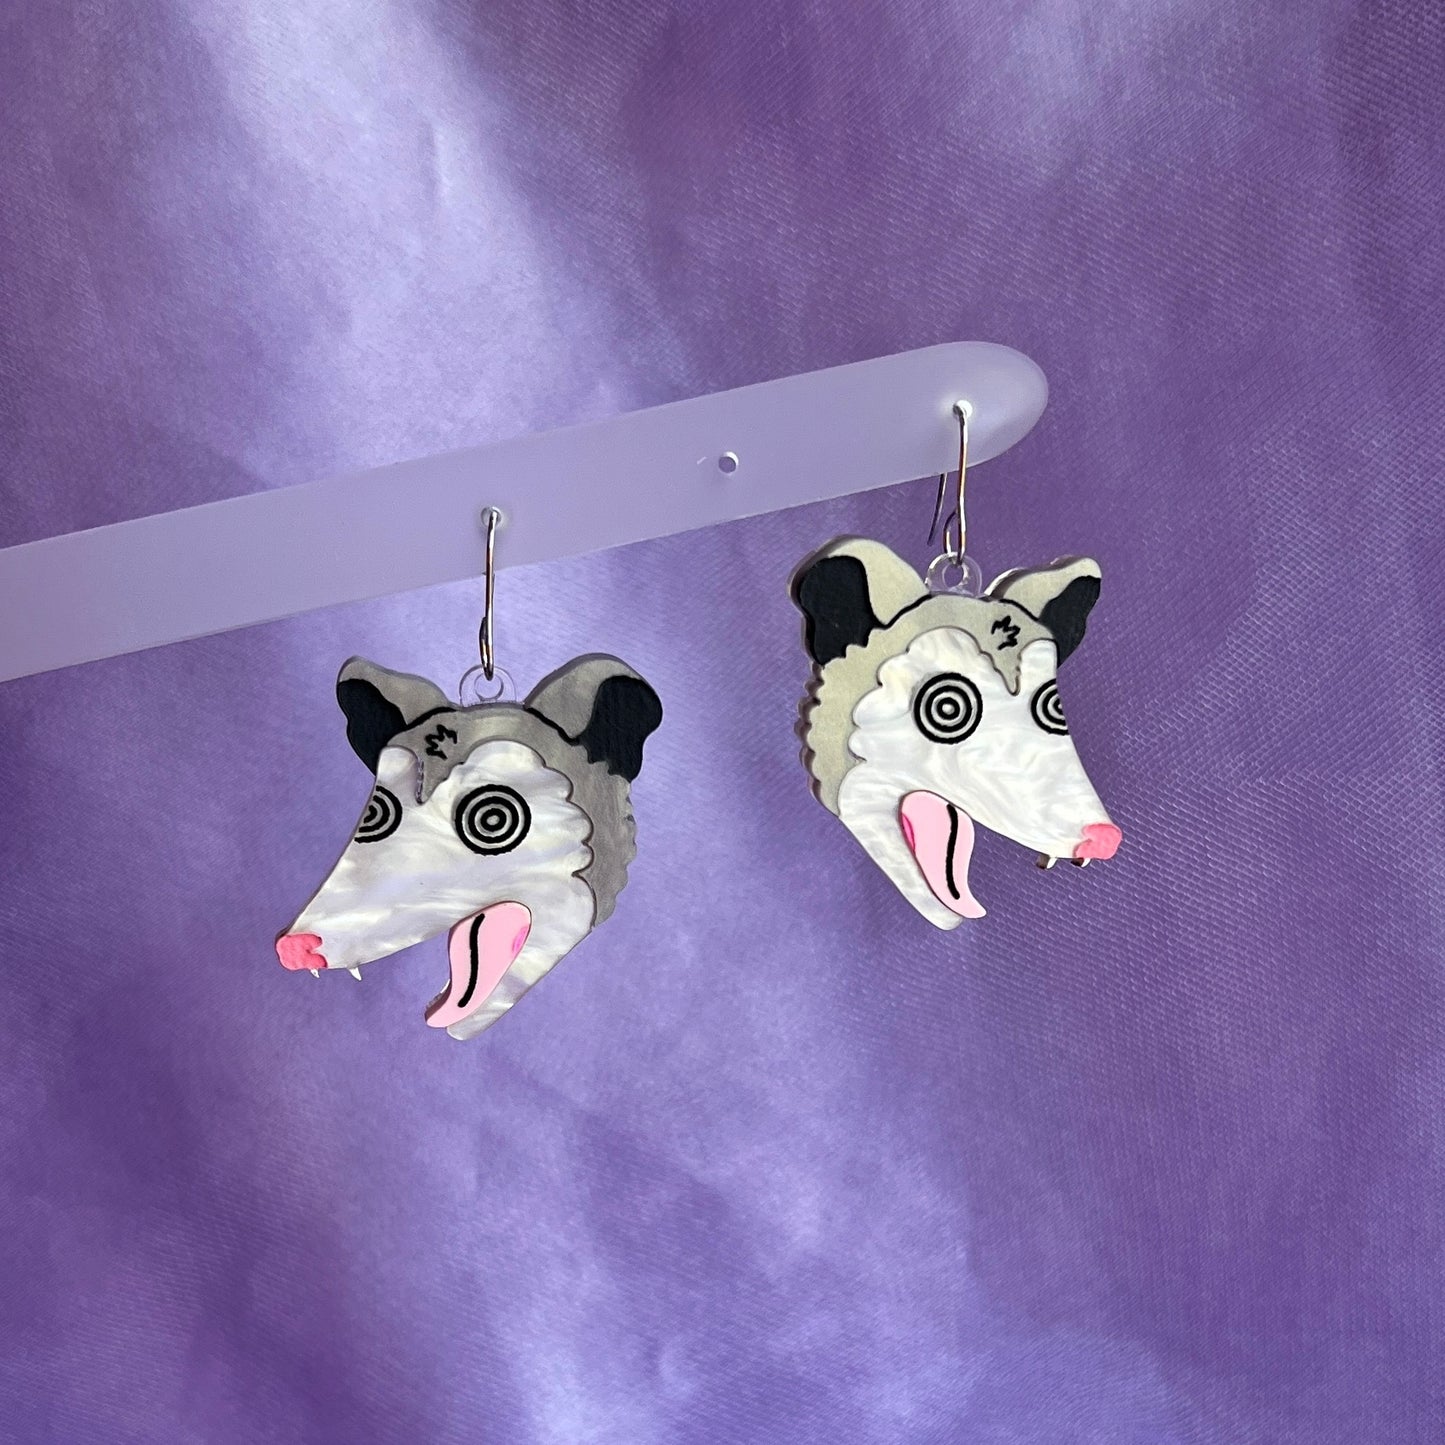 Unhinged opossum earrings